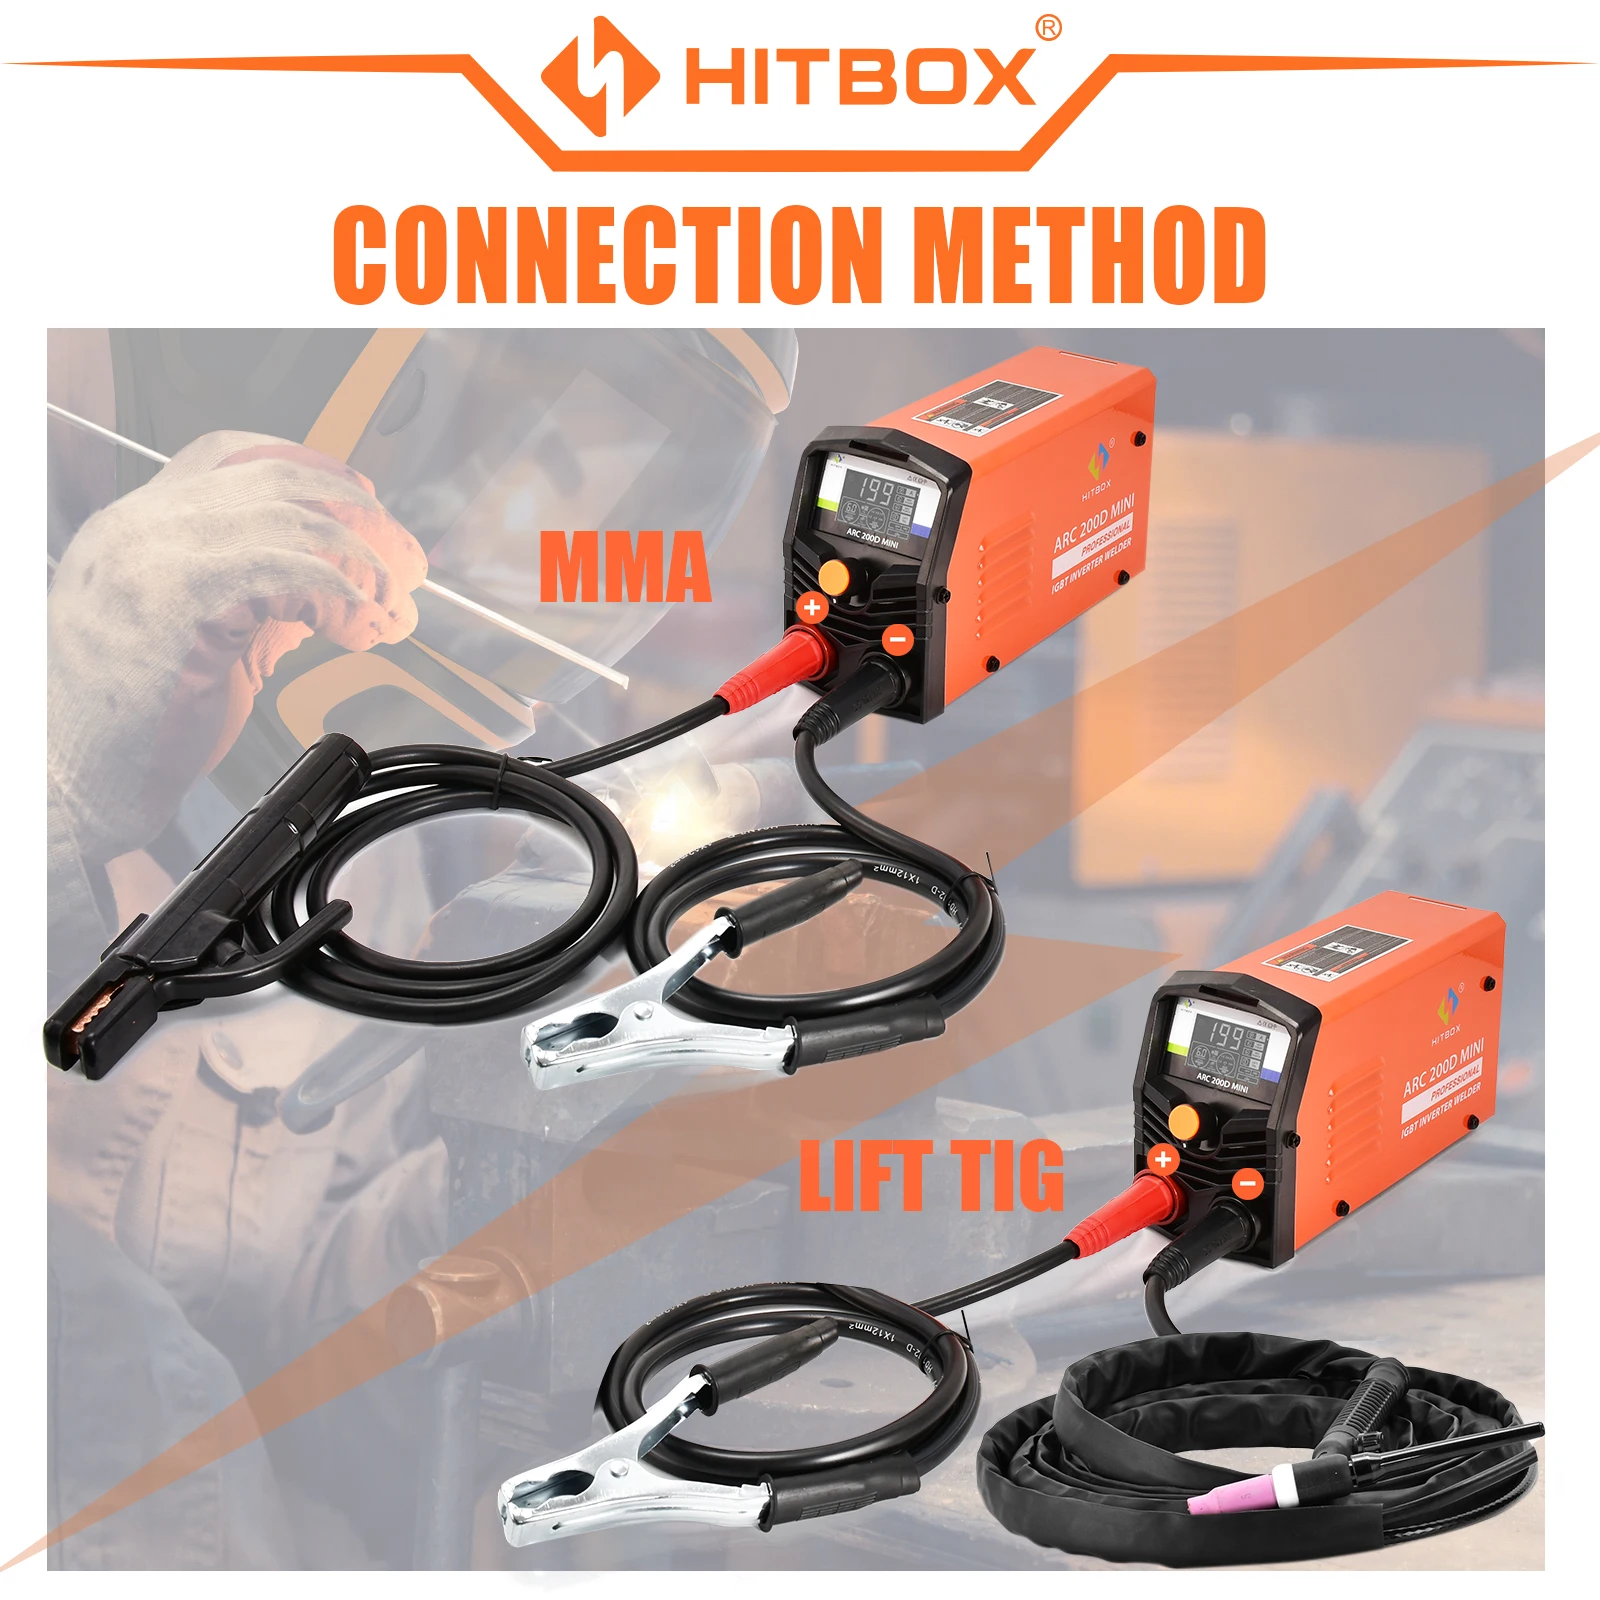 HITBOX 2 v 1 oblouk sváření stroj 10-200A MMA tig-lift svářeč ARC200D MINI IGBT střídače LED digitální displej protable pro domácí